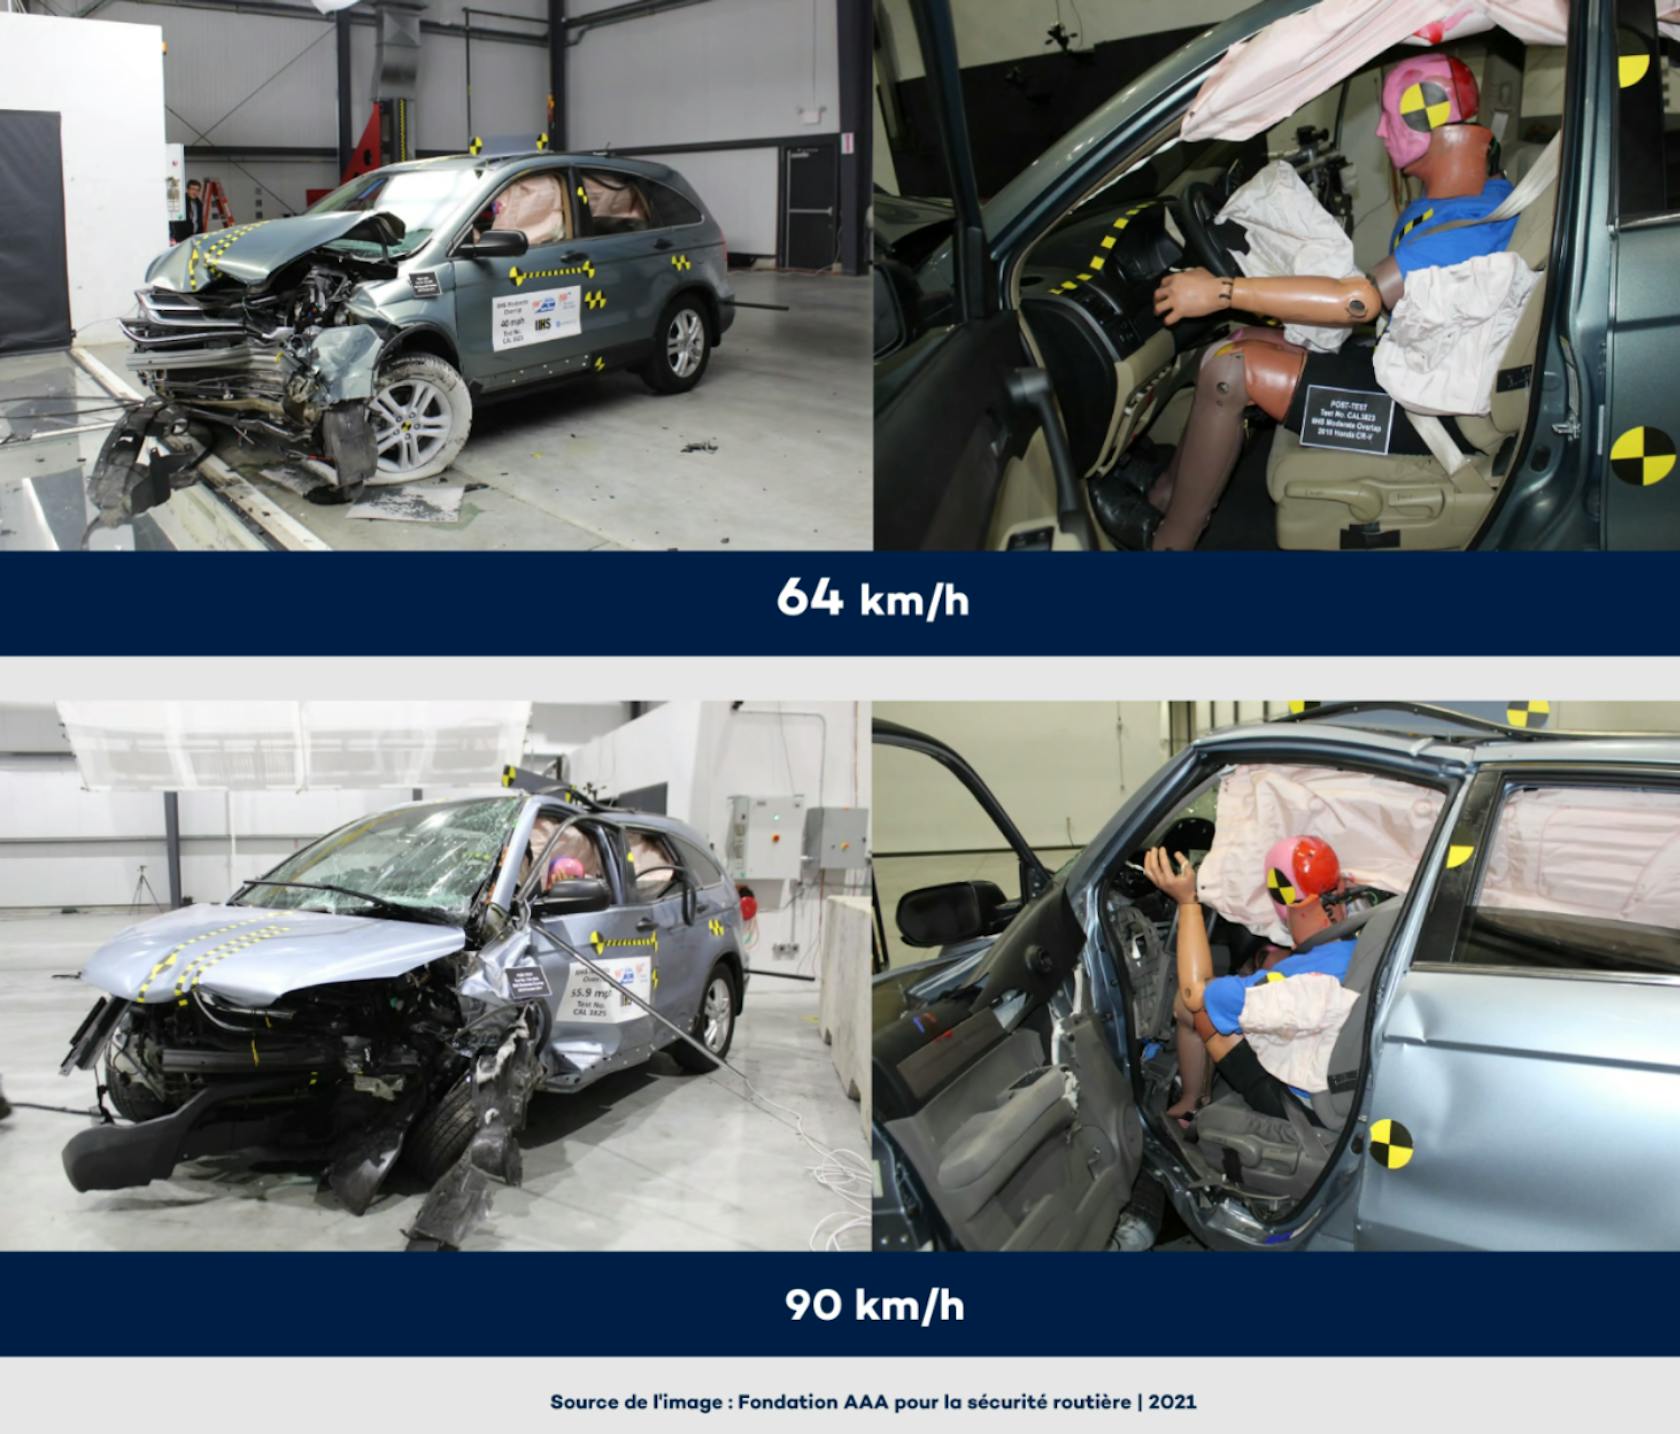 Quatre photos d'accidents. Deux photos montrent les conséquences d'un accident à 64 km/h et deux autres montrent les conséquences d'un accident à 90 km/h.